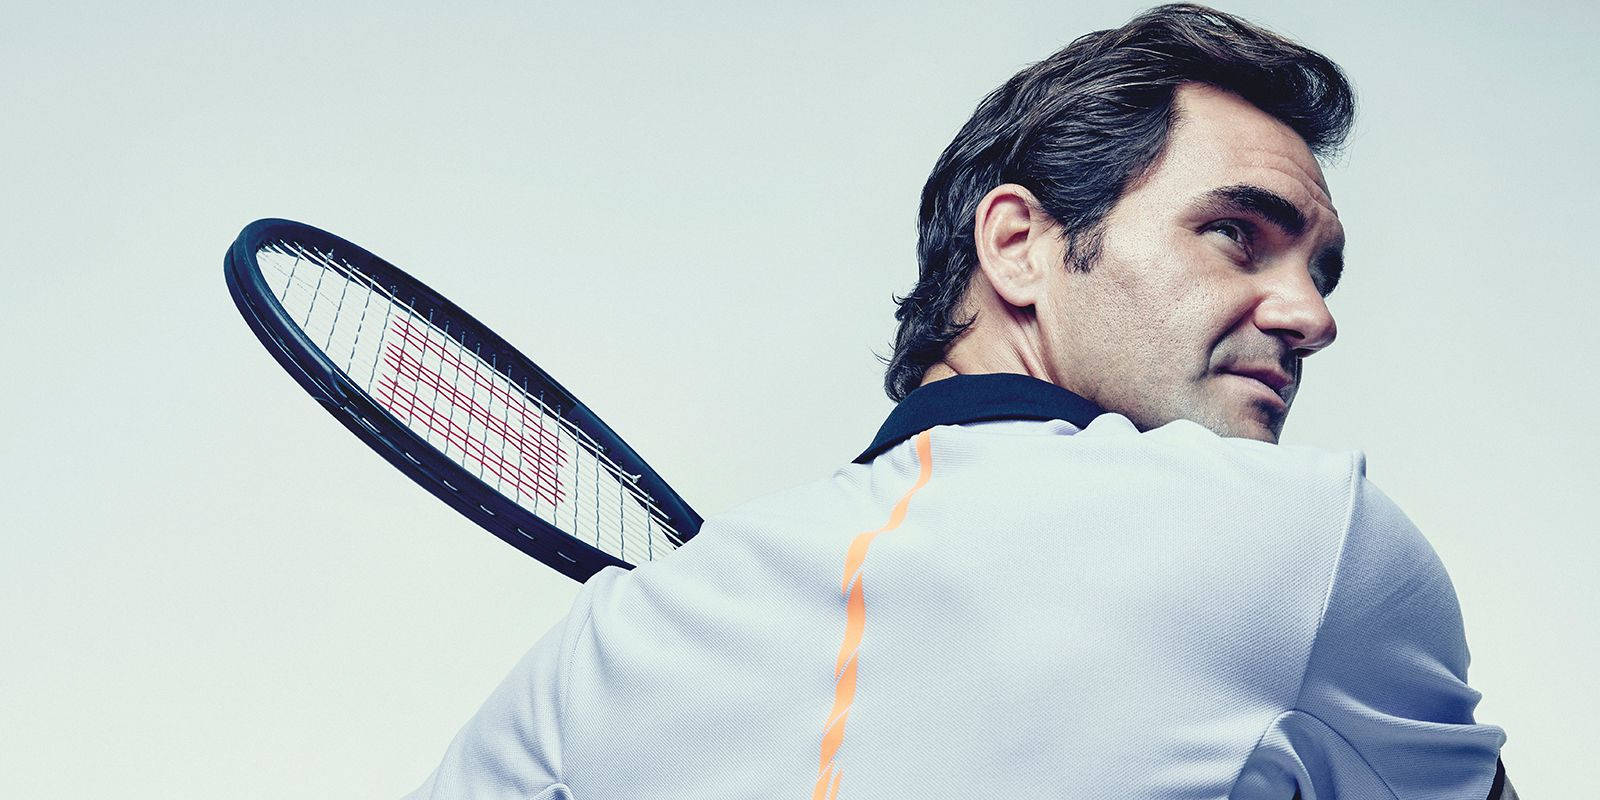 Roger Federer Tennis Master Wallpaper